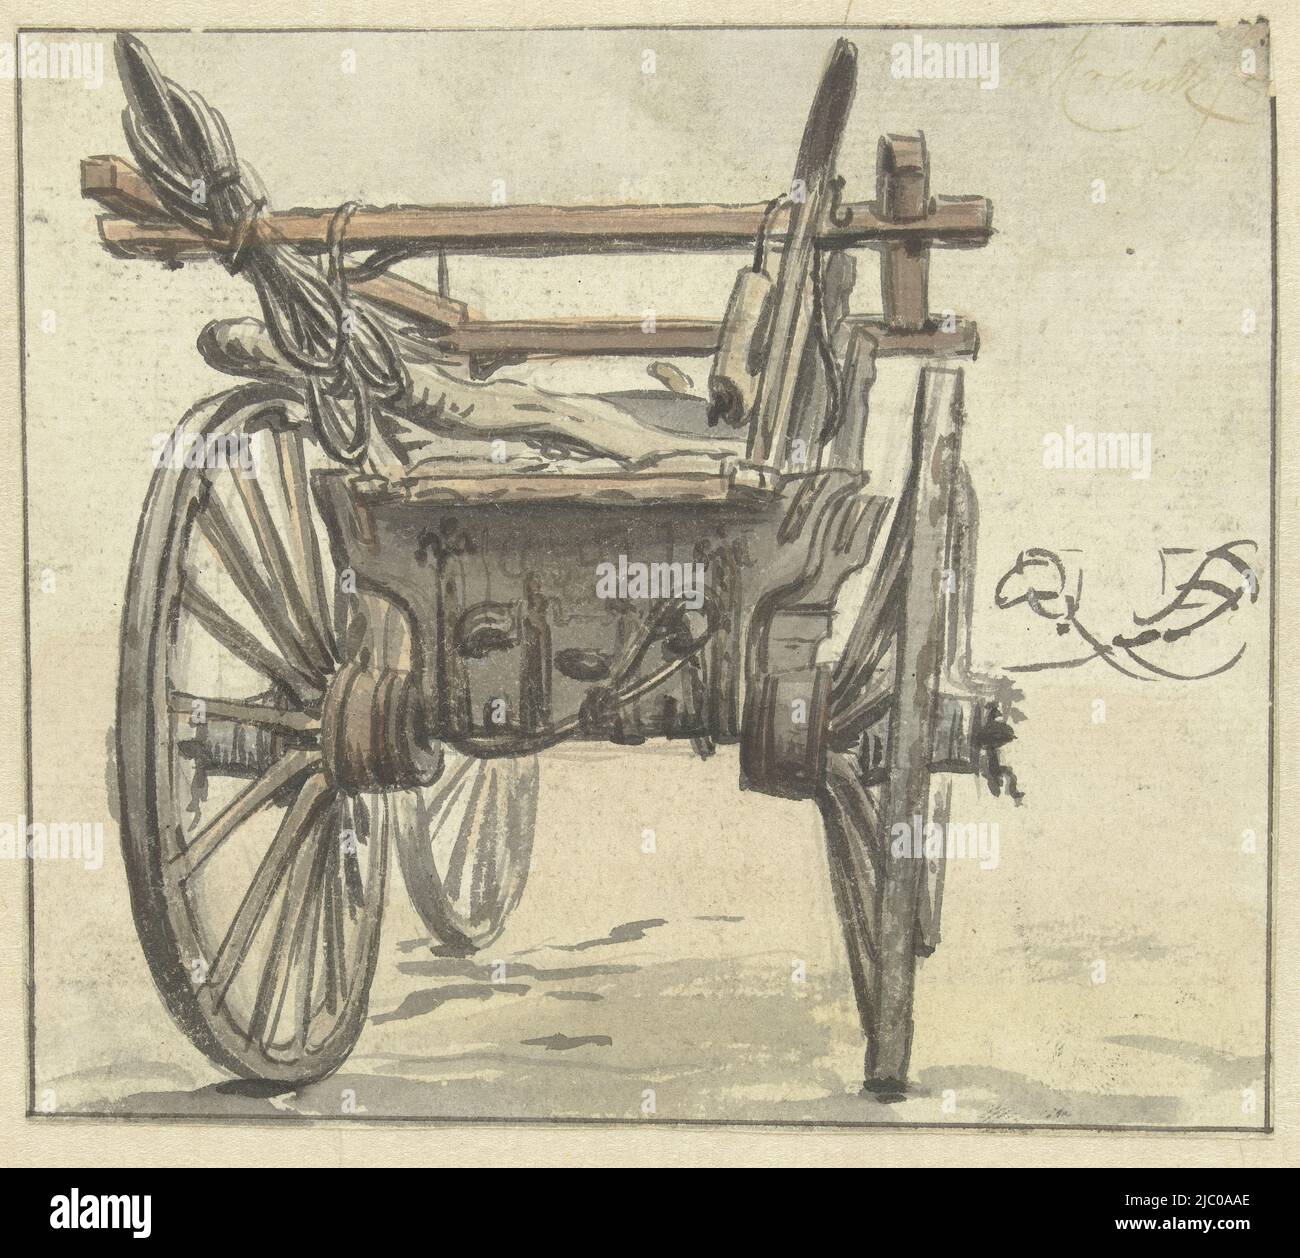 Arrière d'un chariot à quatre roues, dessinateur: Simon Andreas Krausz, 1770 - 1825, papier, brosse, h 142 mm × l 162 mm Banque D'Images